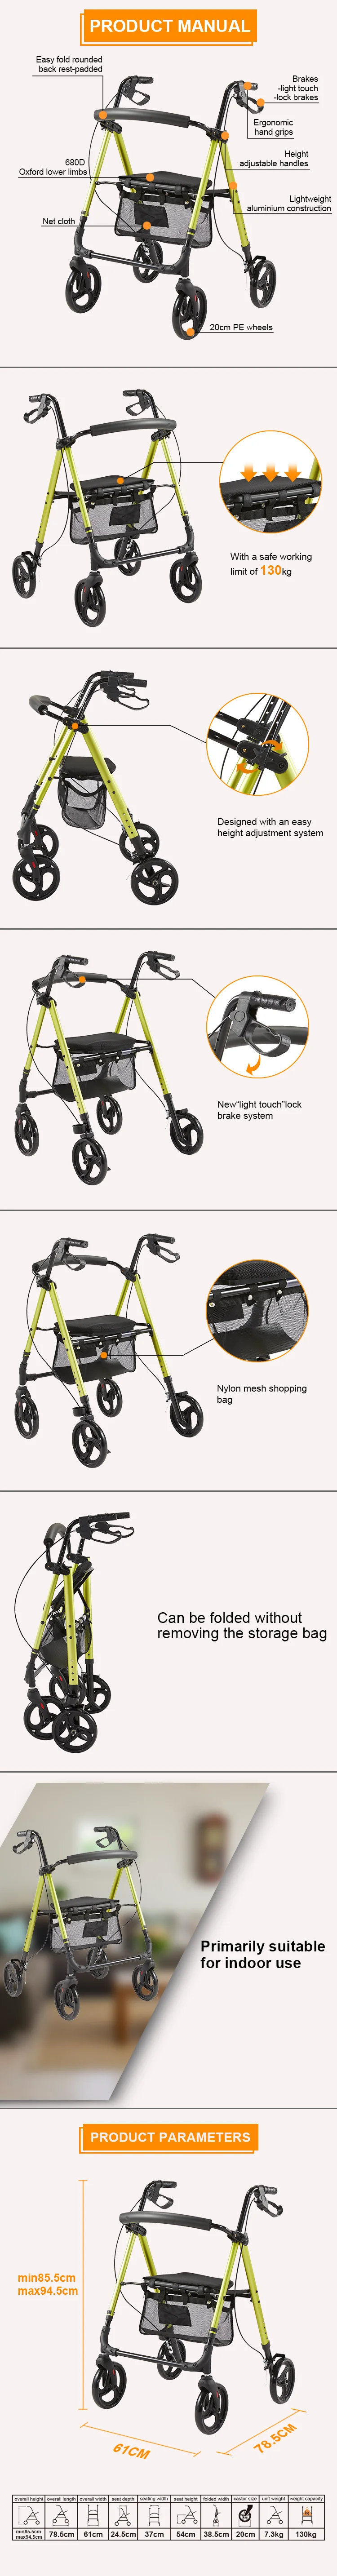 4 wheels walker rollator